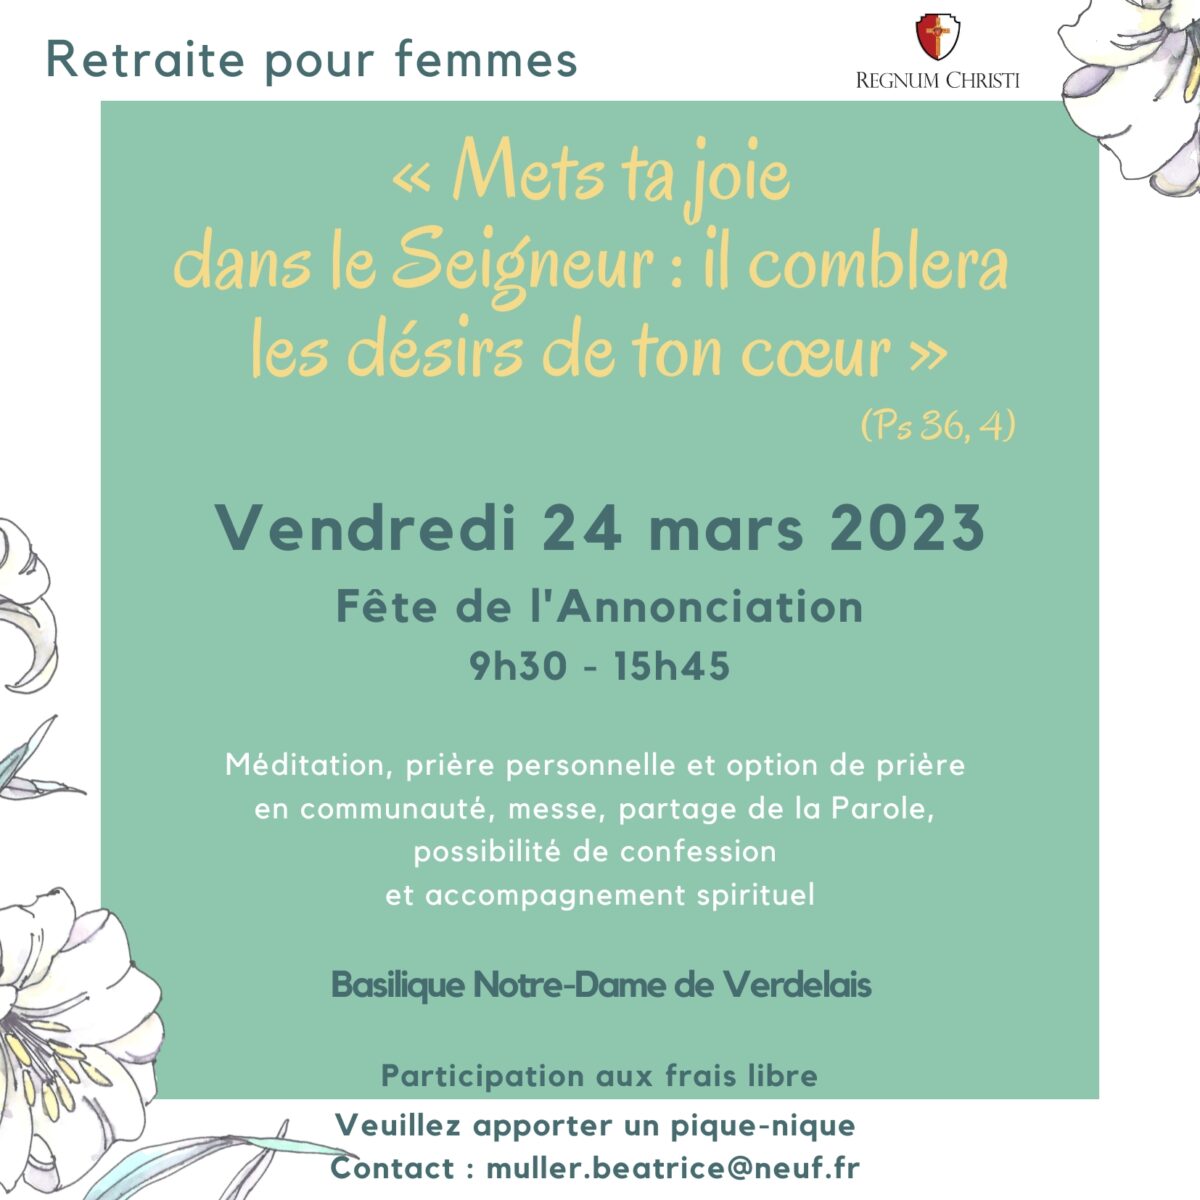 Retraite spirituelle pour femmes à Bordeaux